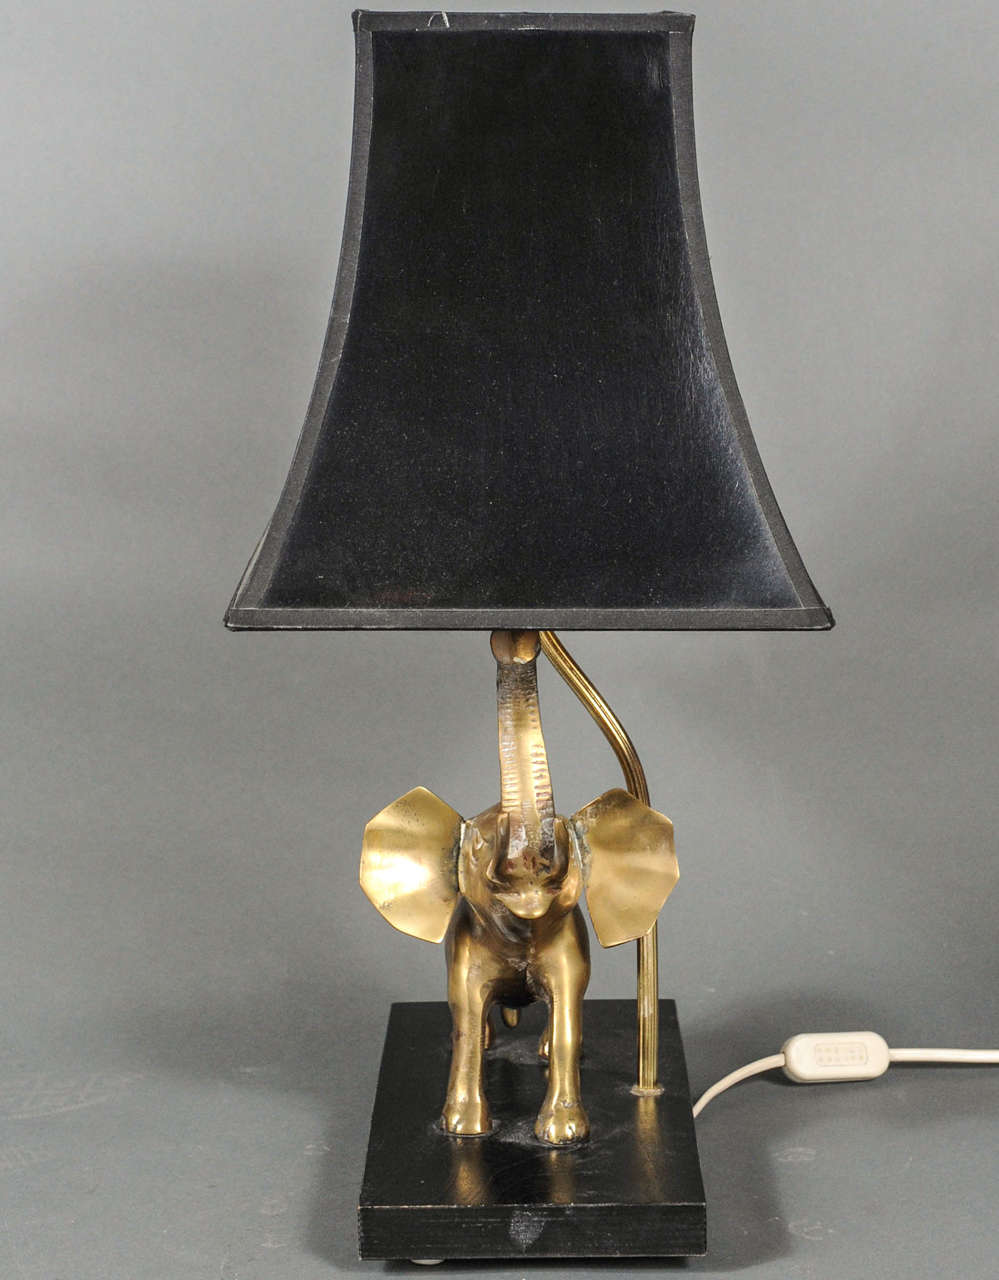 French Maison Charles elephant lamp